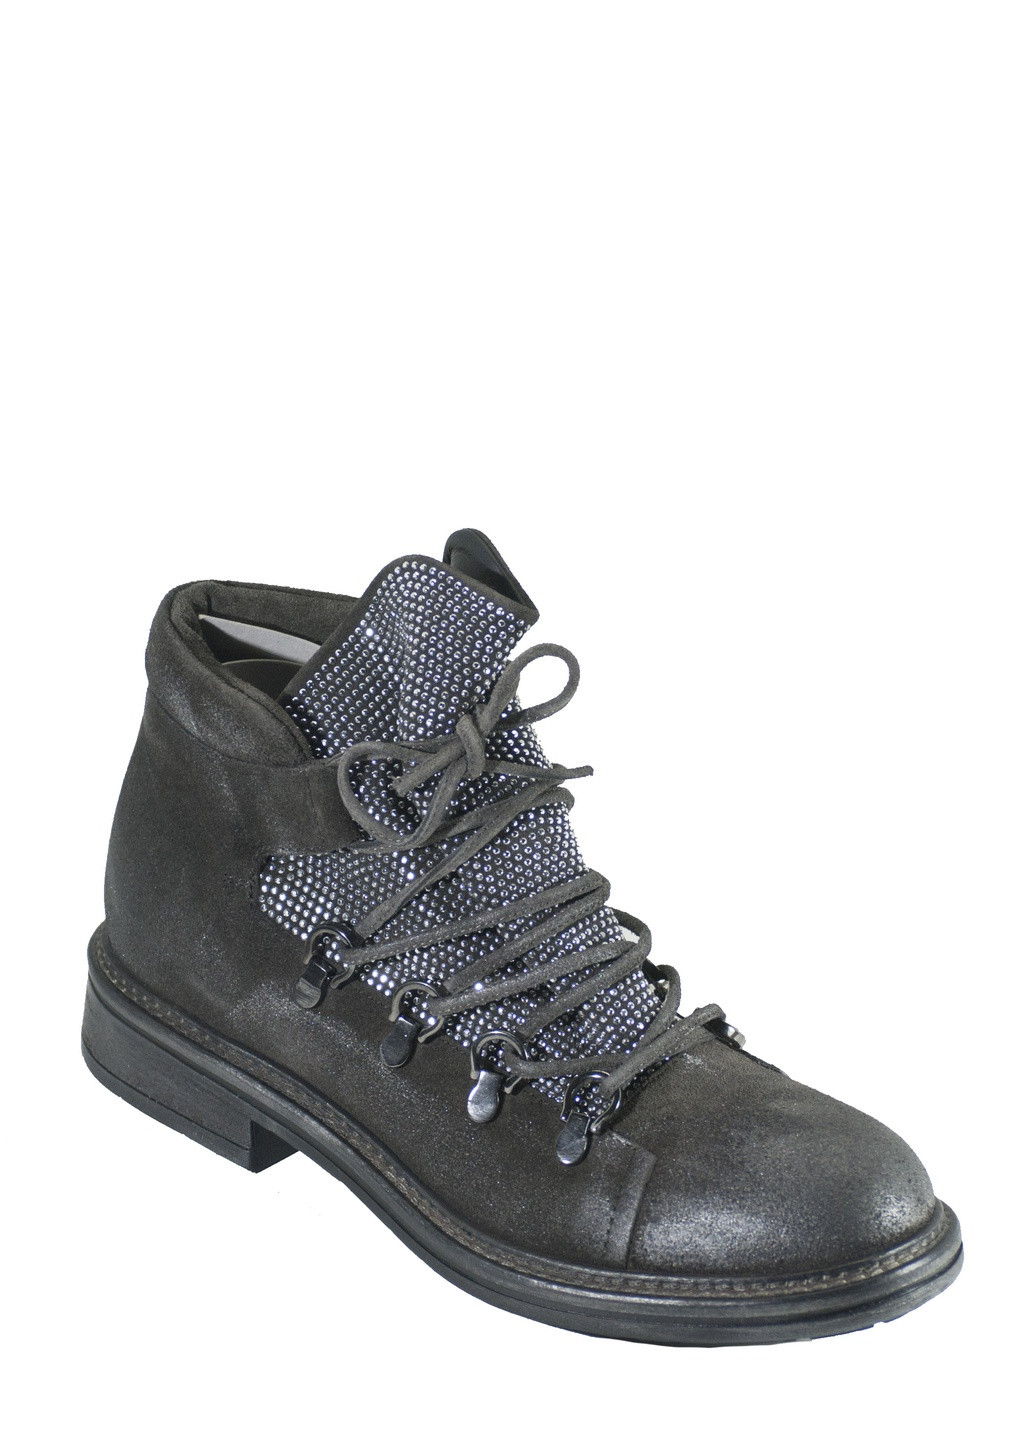 Осенние ботинки Fru.it со шнуровкой, с заклепками, с потертостями из натуральной замши